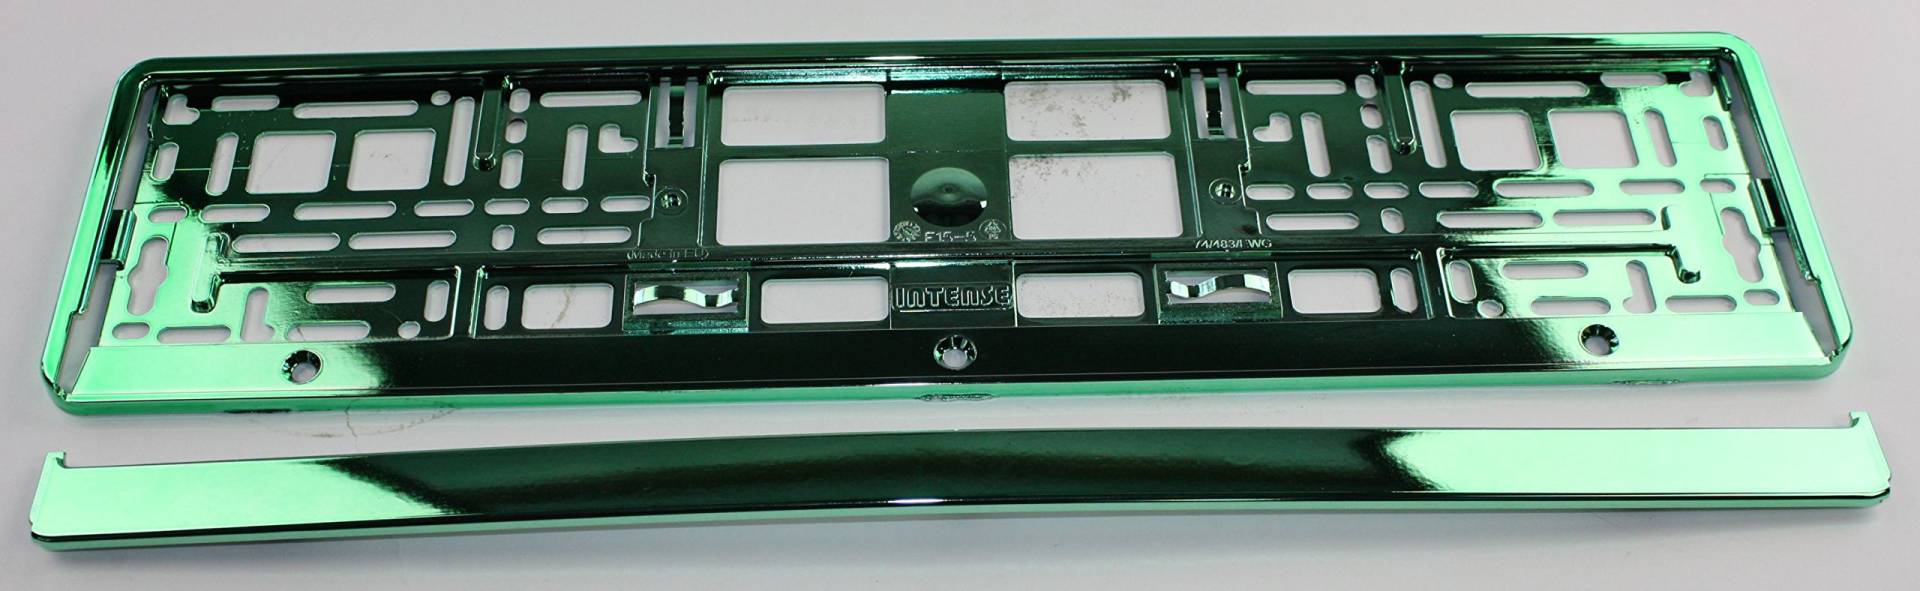 ZentimeX Z788695 Kennzeichenhalter Kennzeichenhalterung grün glänzend Hochglanz für DE-Standard Kennzeichen 1 Stück von ZentimeX